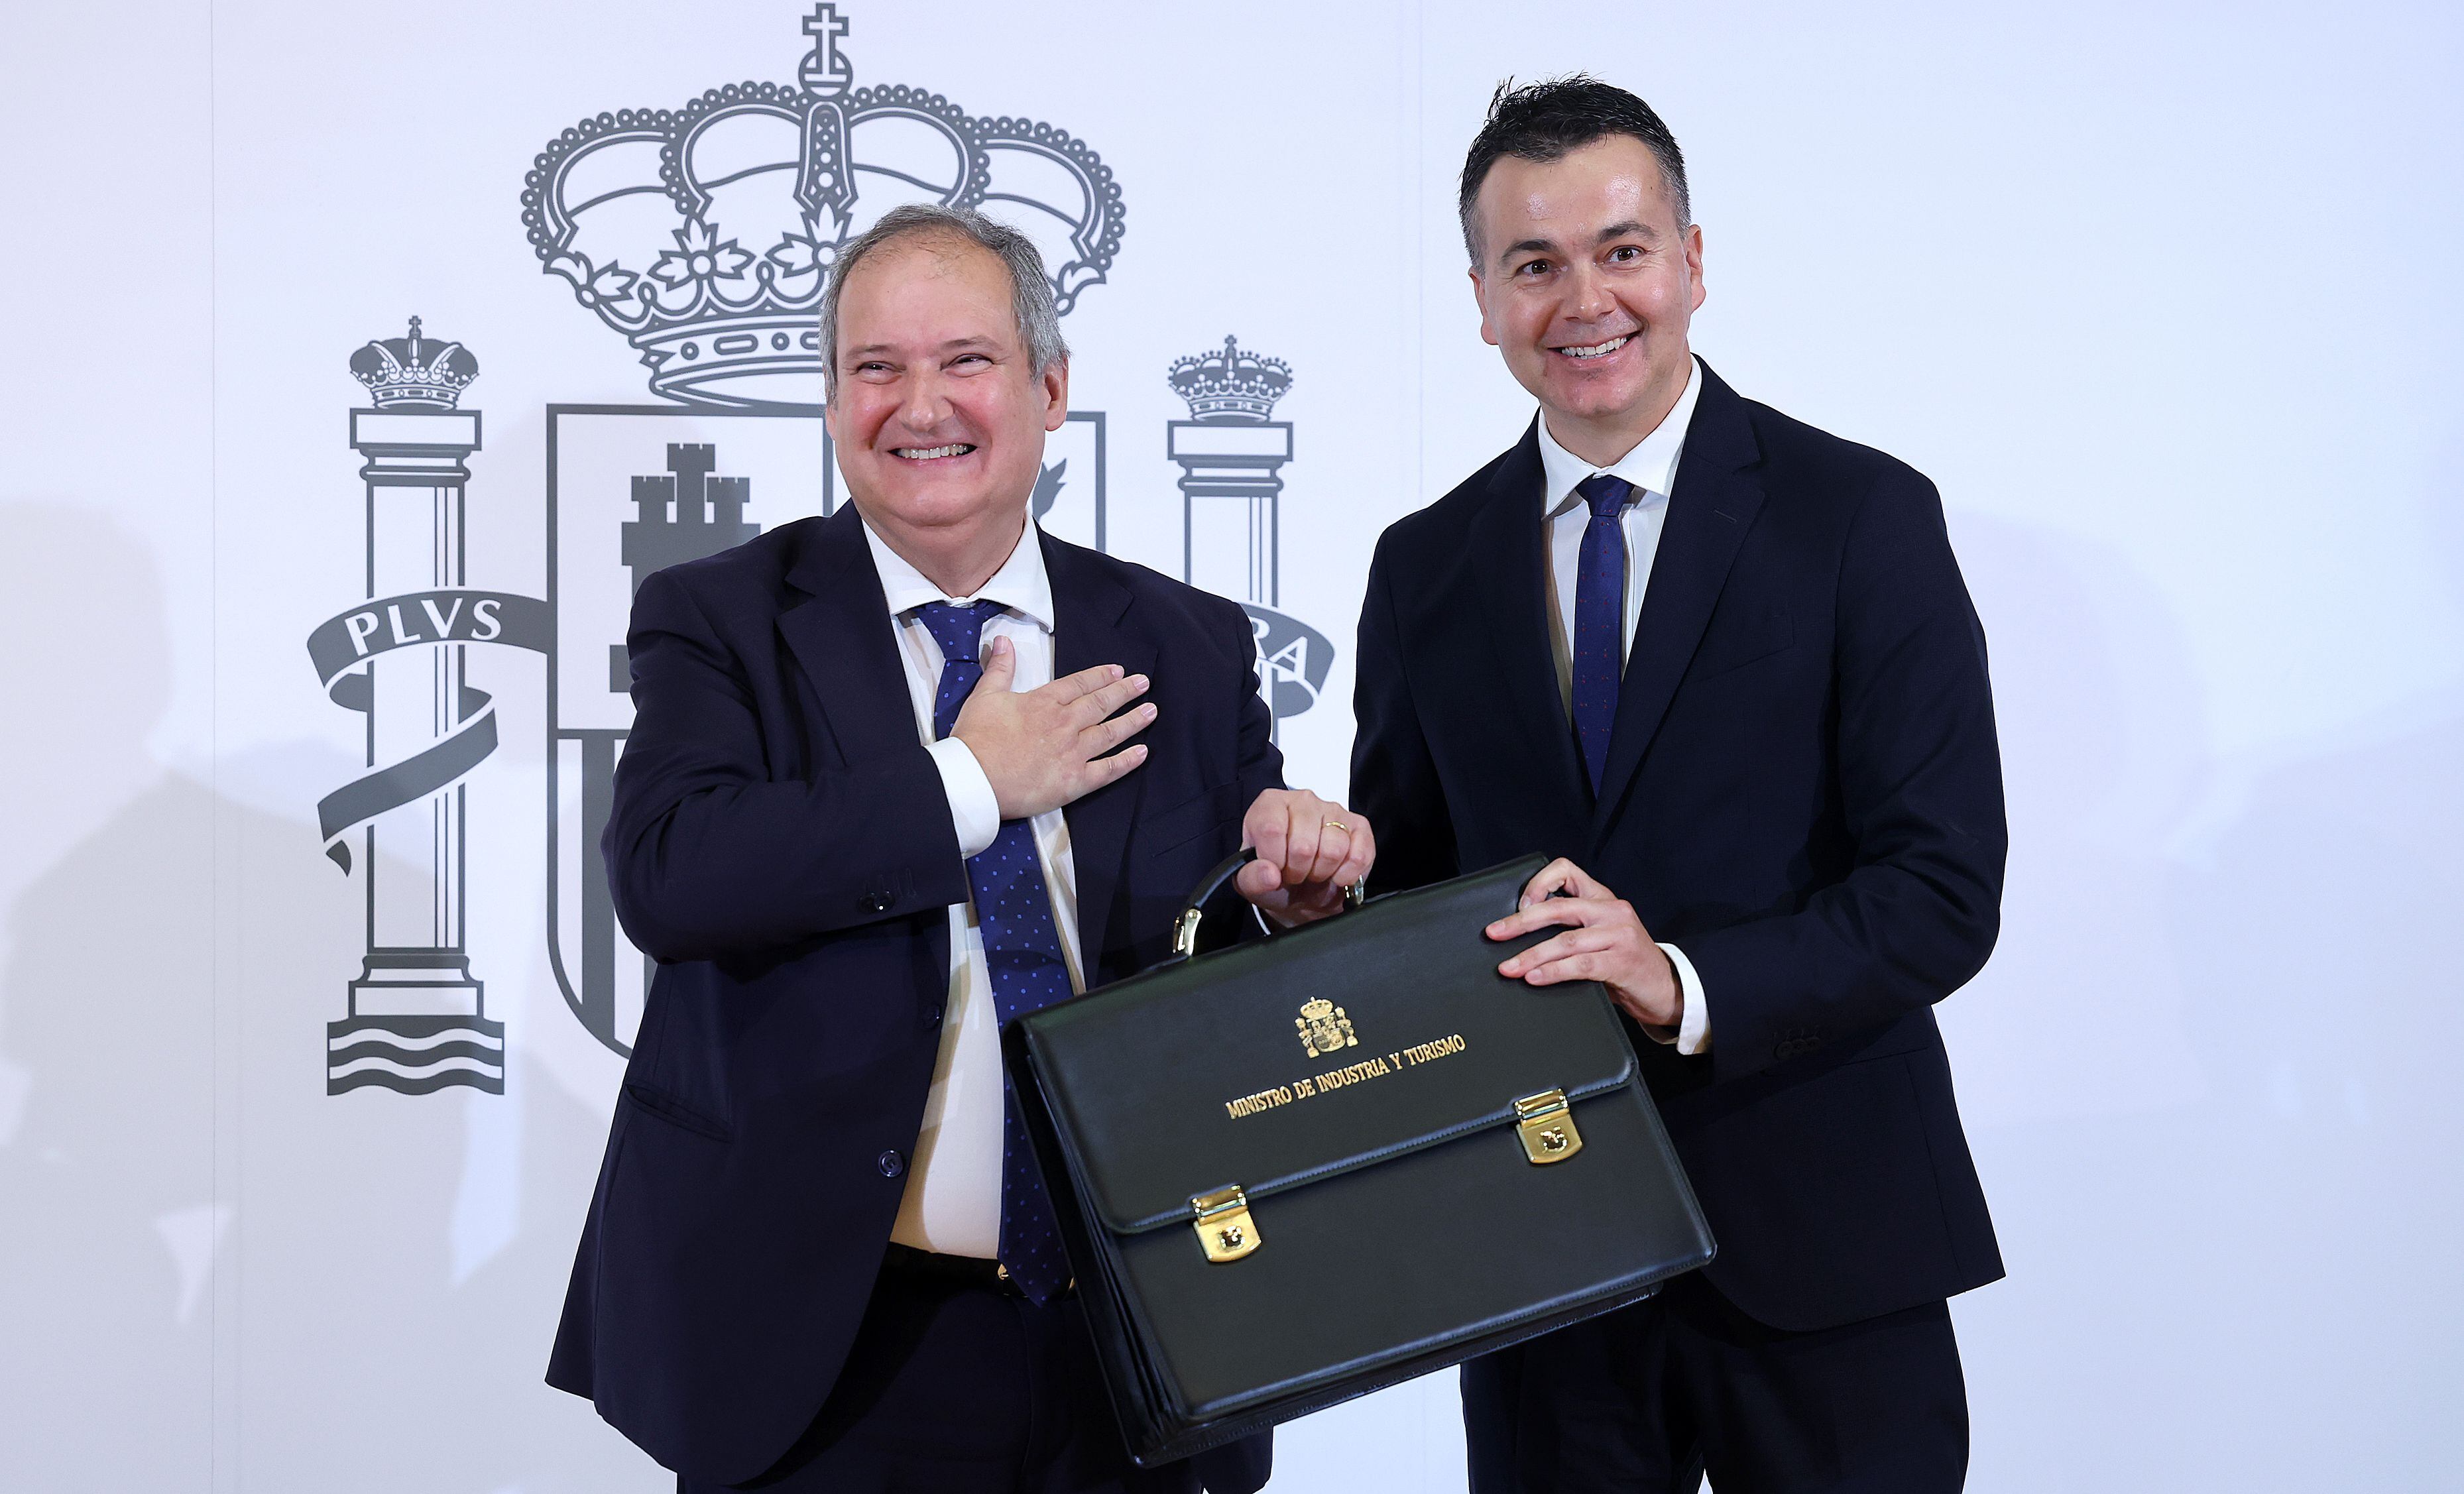 El hasta ahora ministro de Industria, Comercio y Turismo, Héctor Gómez (a la derecha), entrega su cartera de Industria y Turismo al exalcalde de Barcelona Jordi Hereu, en el Ministerio de Asuntos Económicos y Transformación.